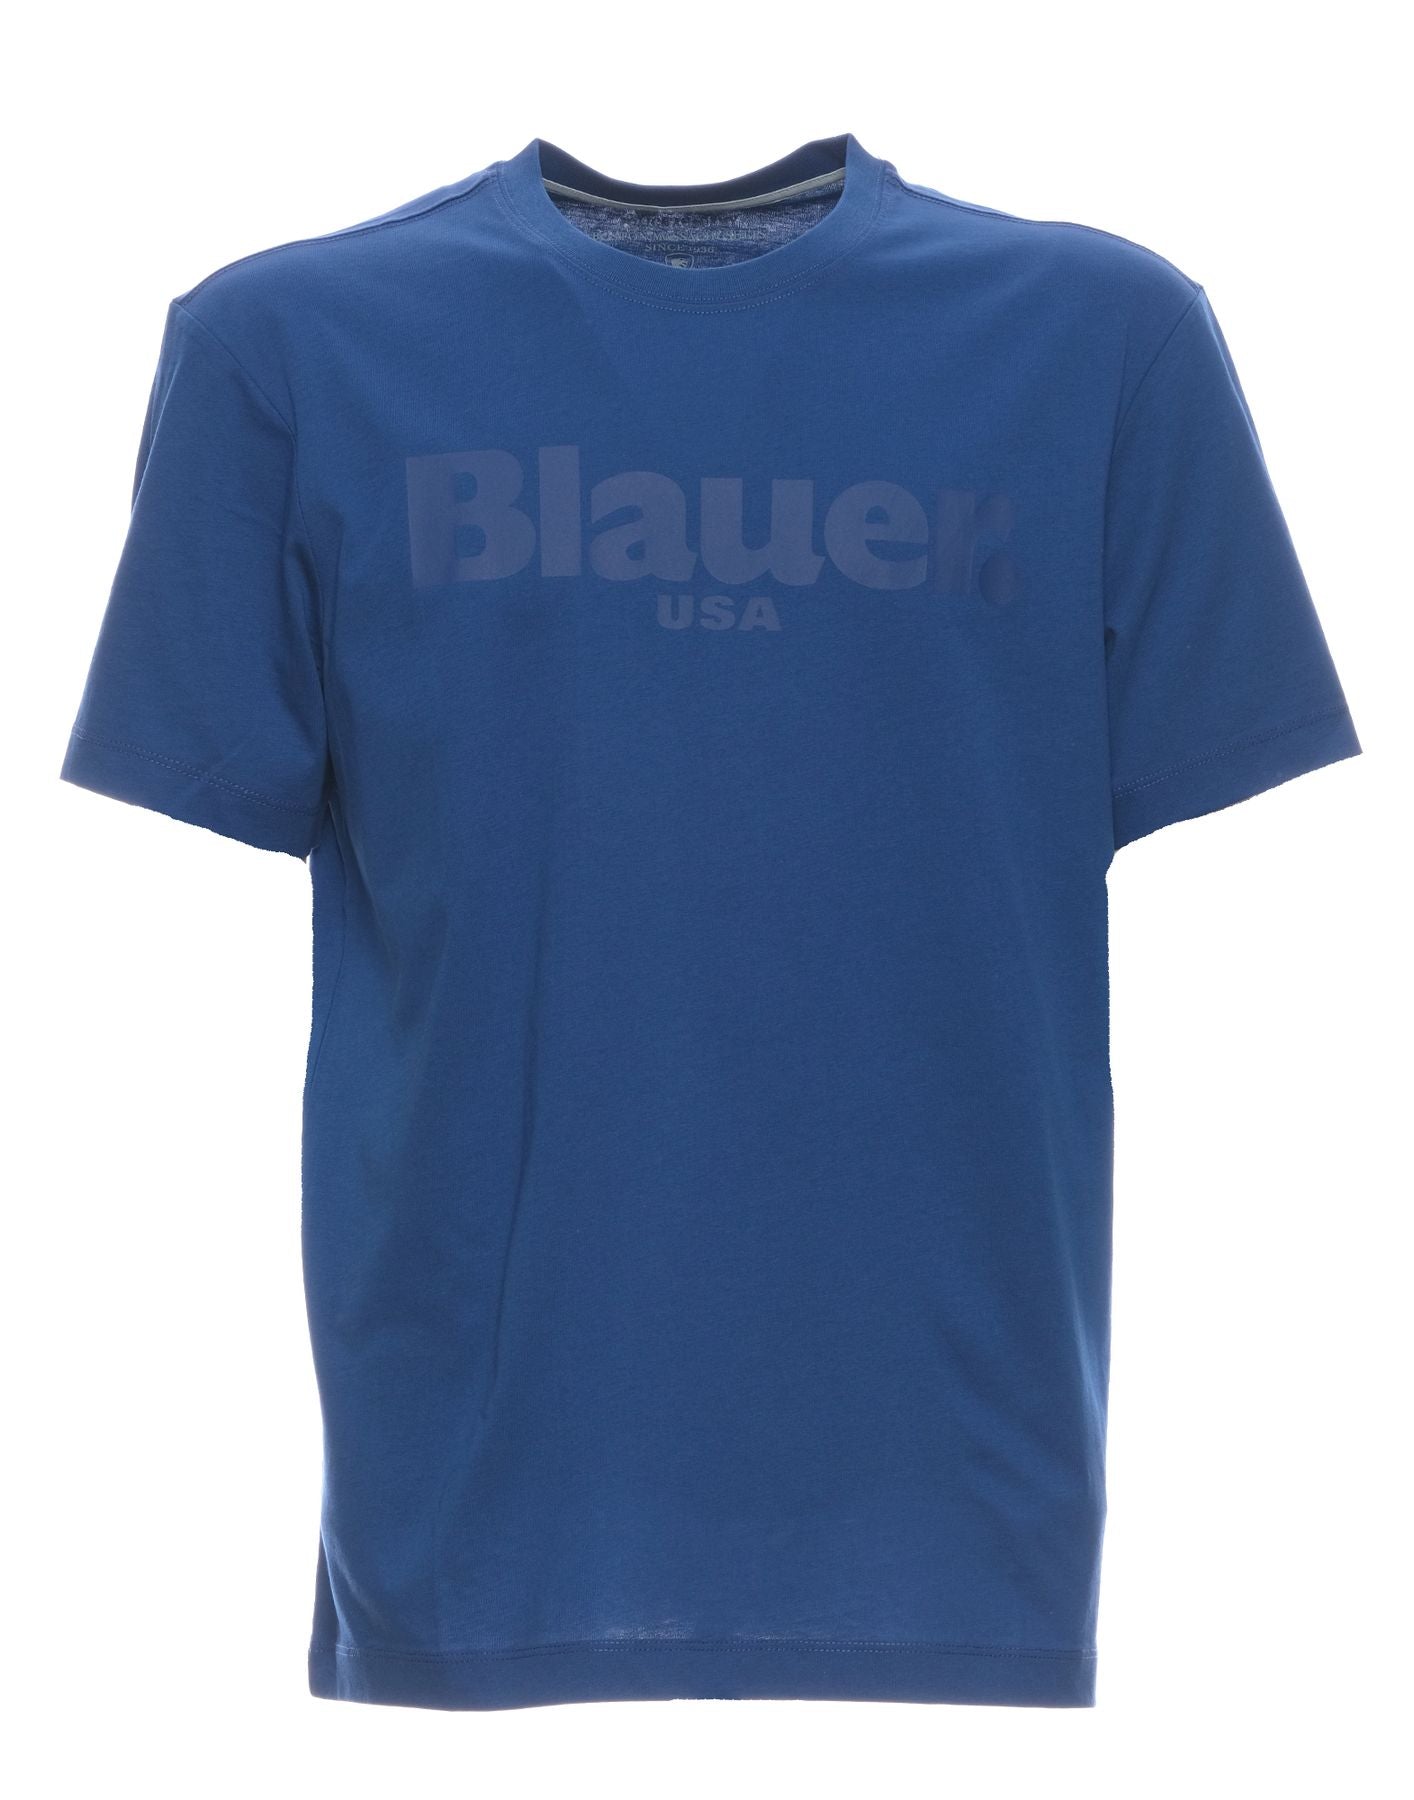 Camiseta para el hombre Bluh02094 004547 772 Blauer